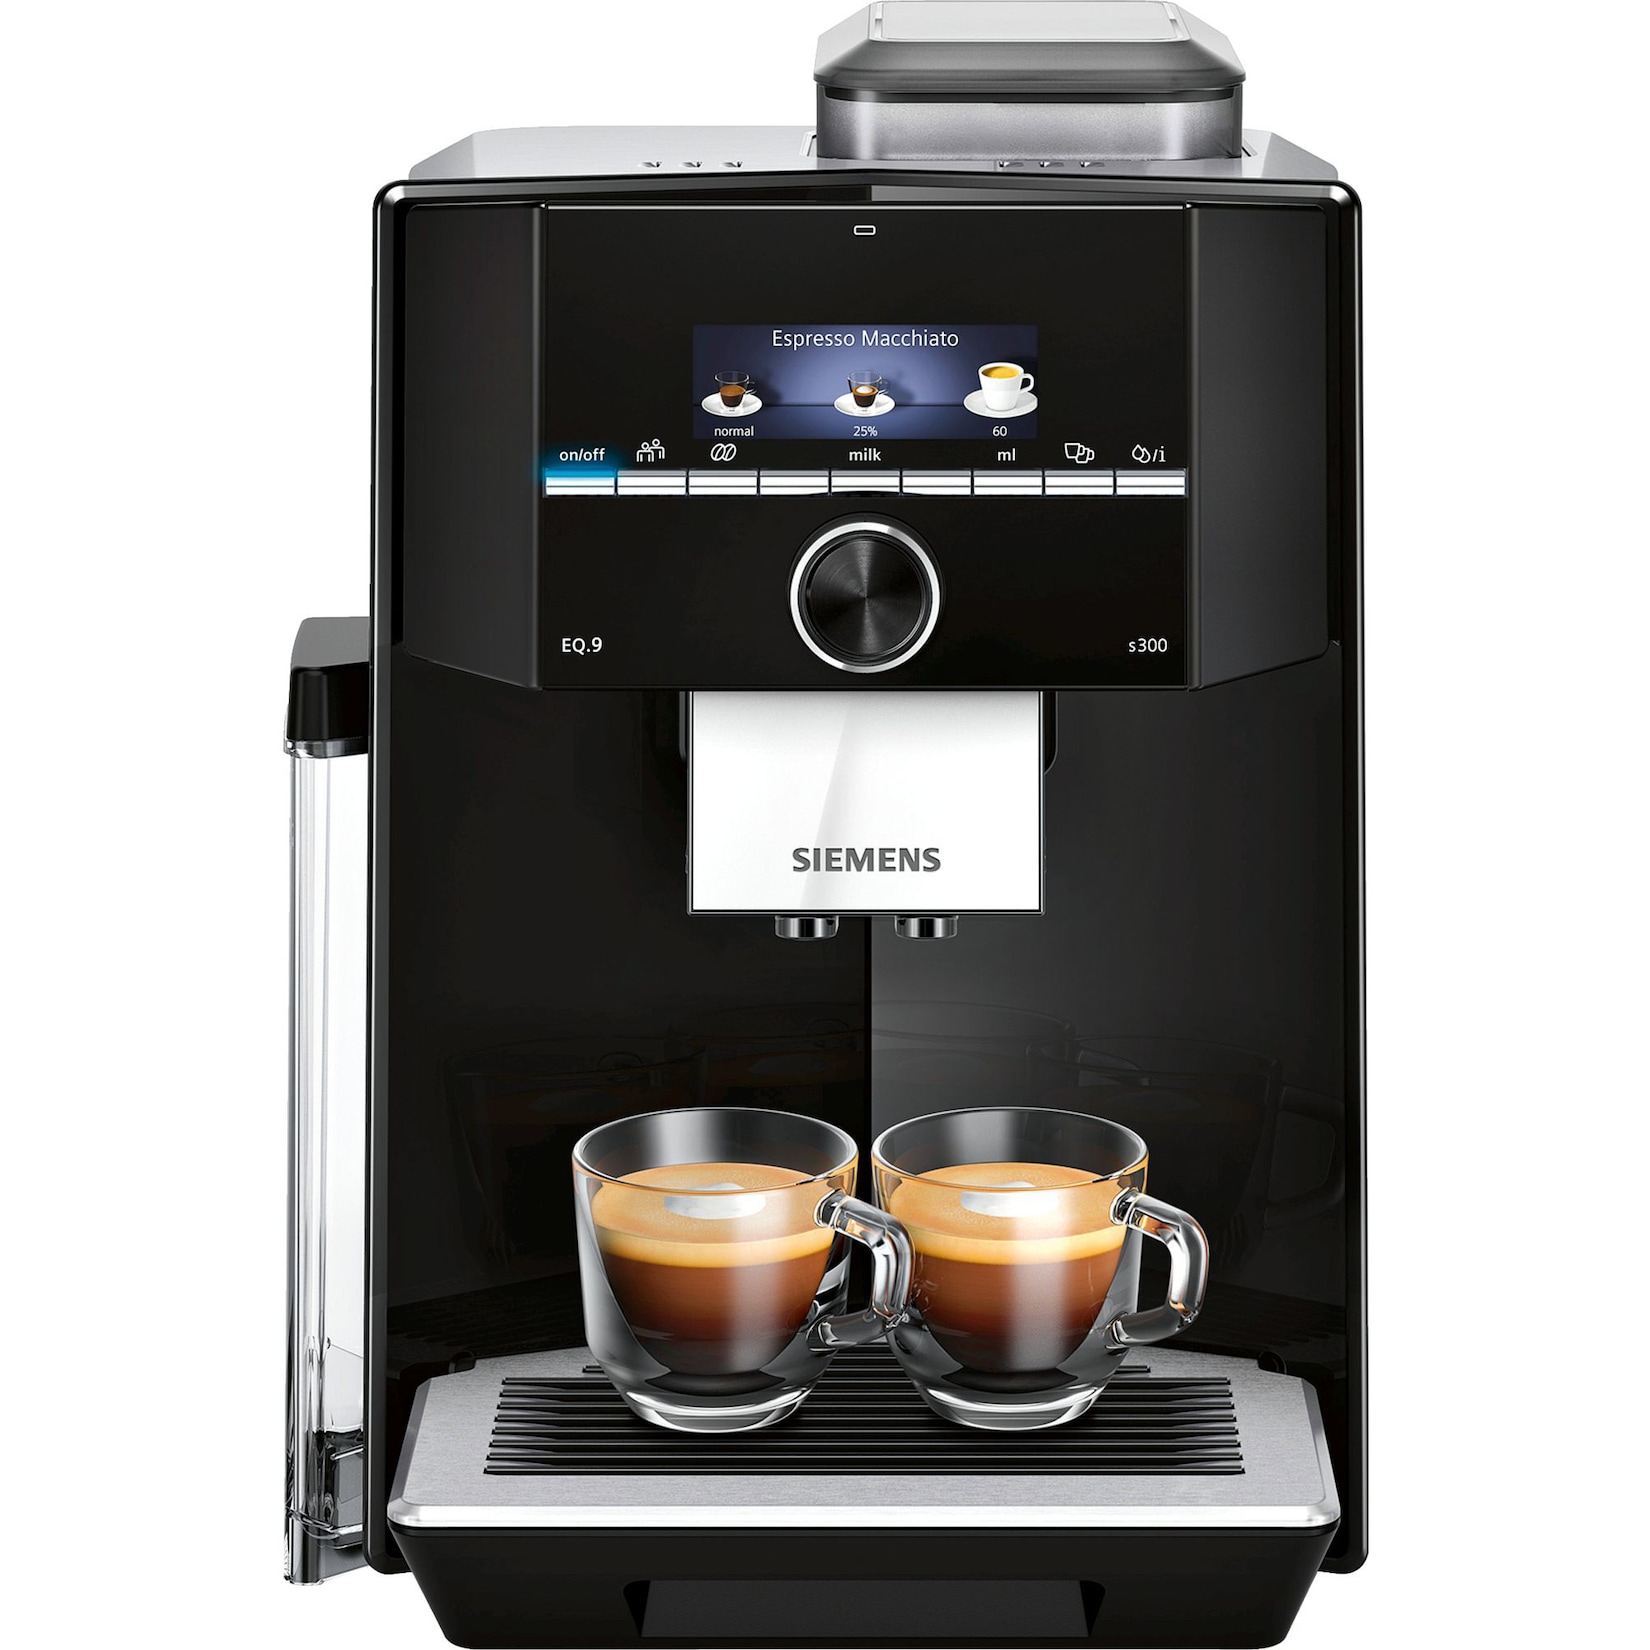 Kaffeevollautomat per Rechnung bestellen - Shops mit Rechnungskauf